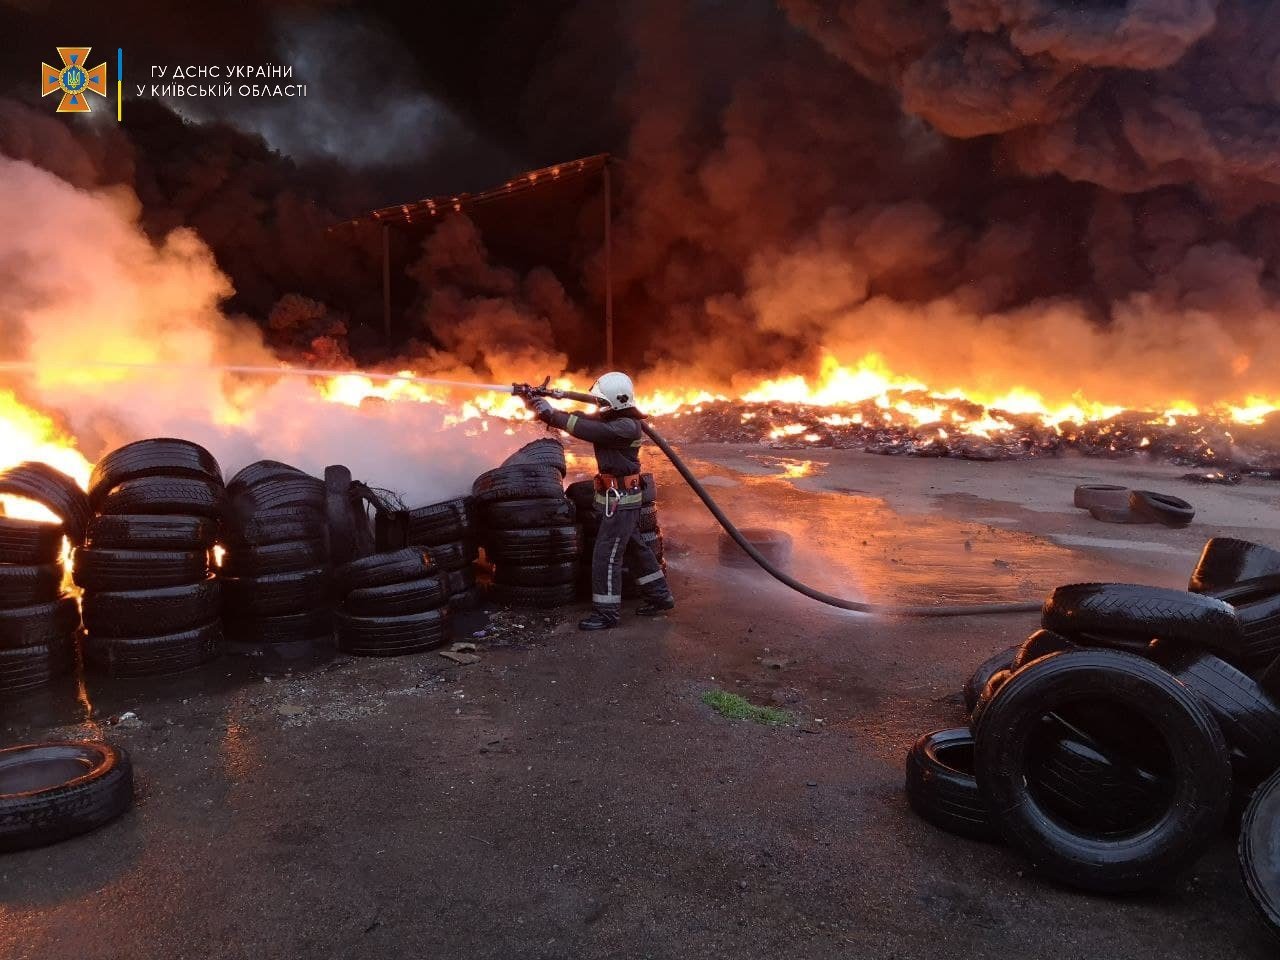 В селе Бышев на Киевщине произошел пожар на складе бытовых отходов